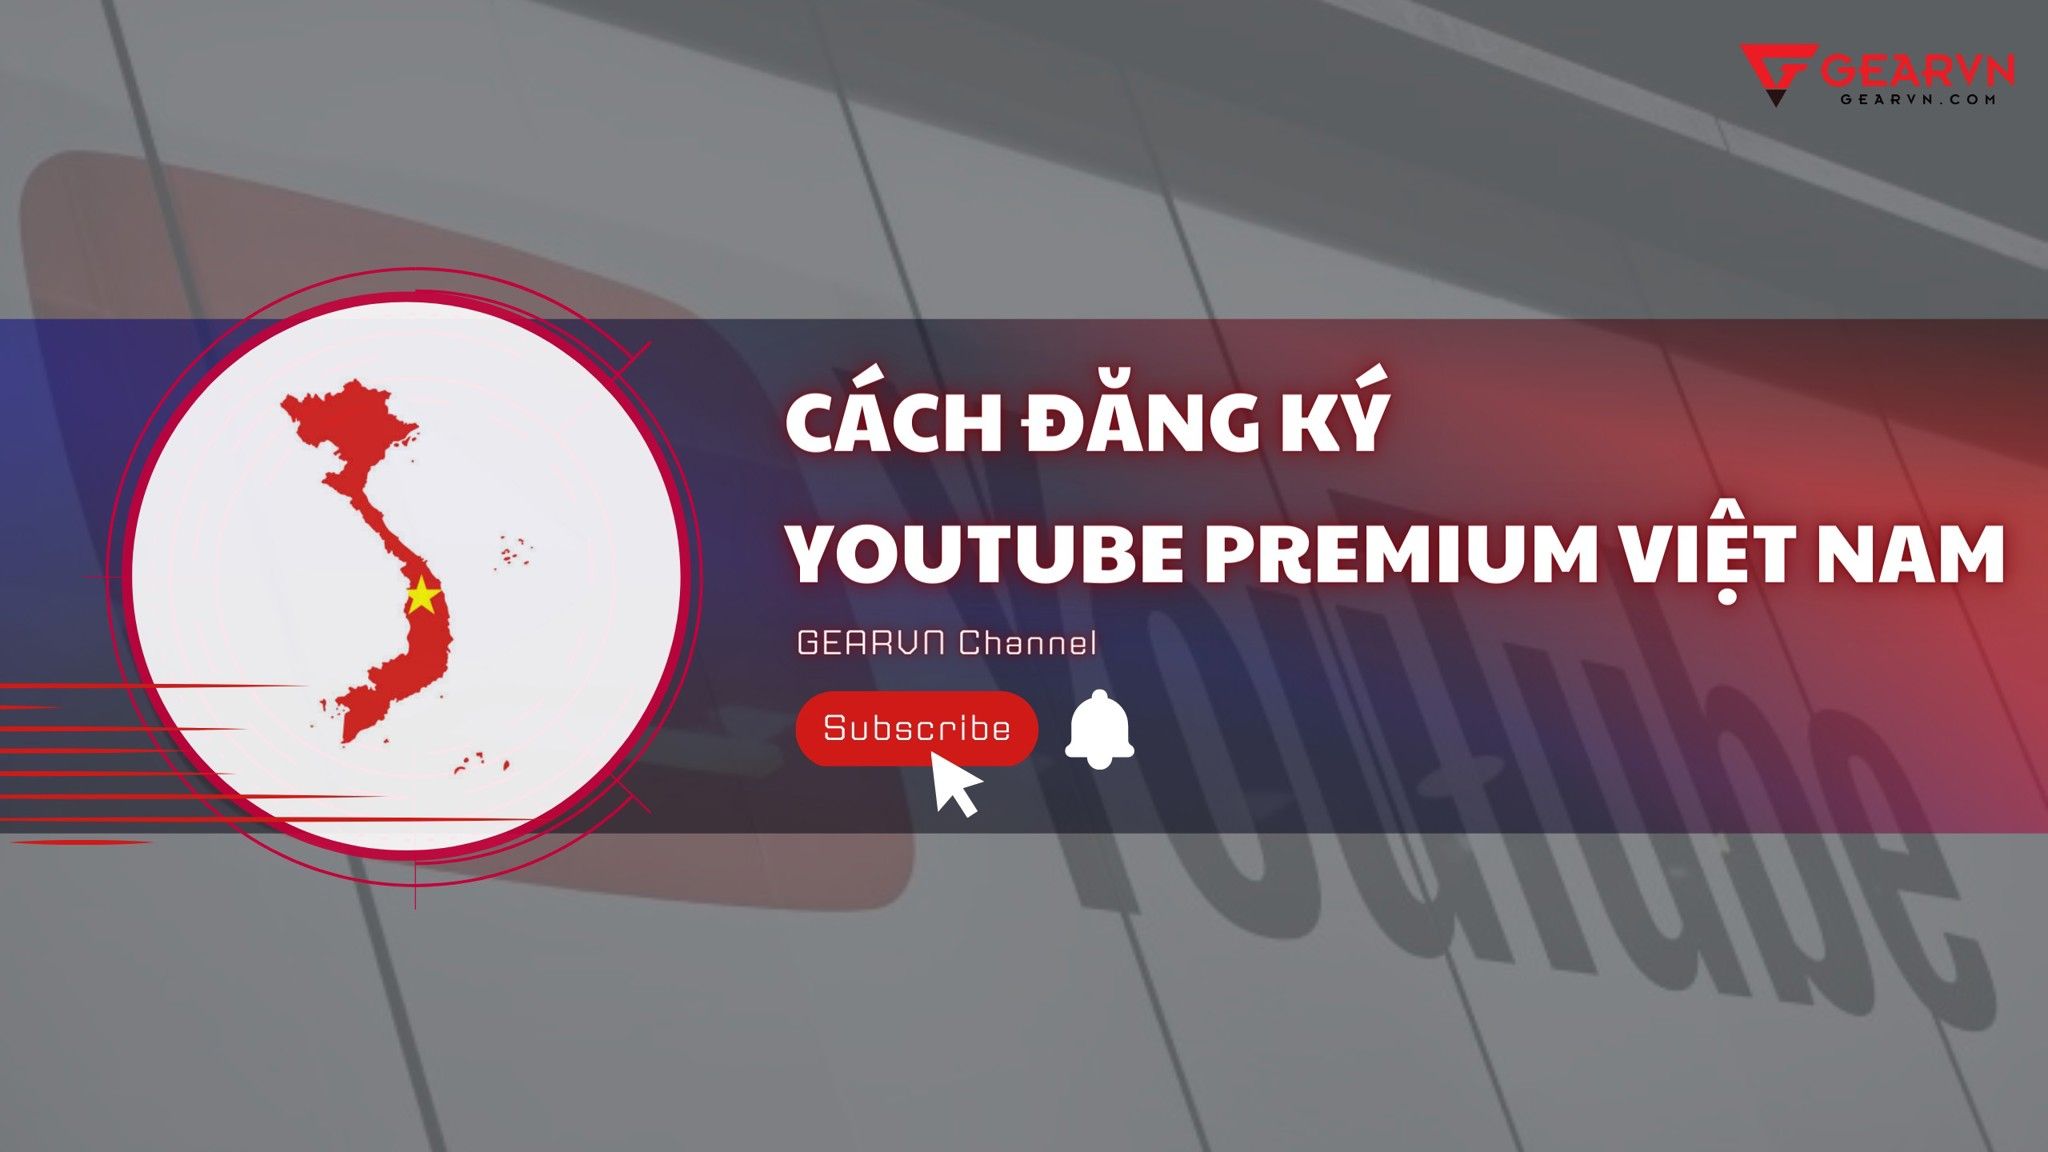 Cách đăng ký Youtube Premium Việt Nam trên PC, iPhone và Android